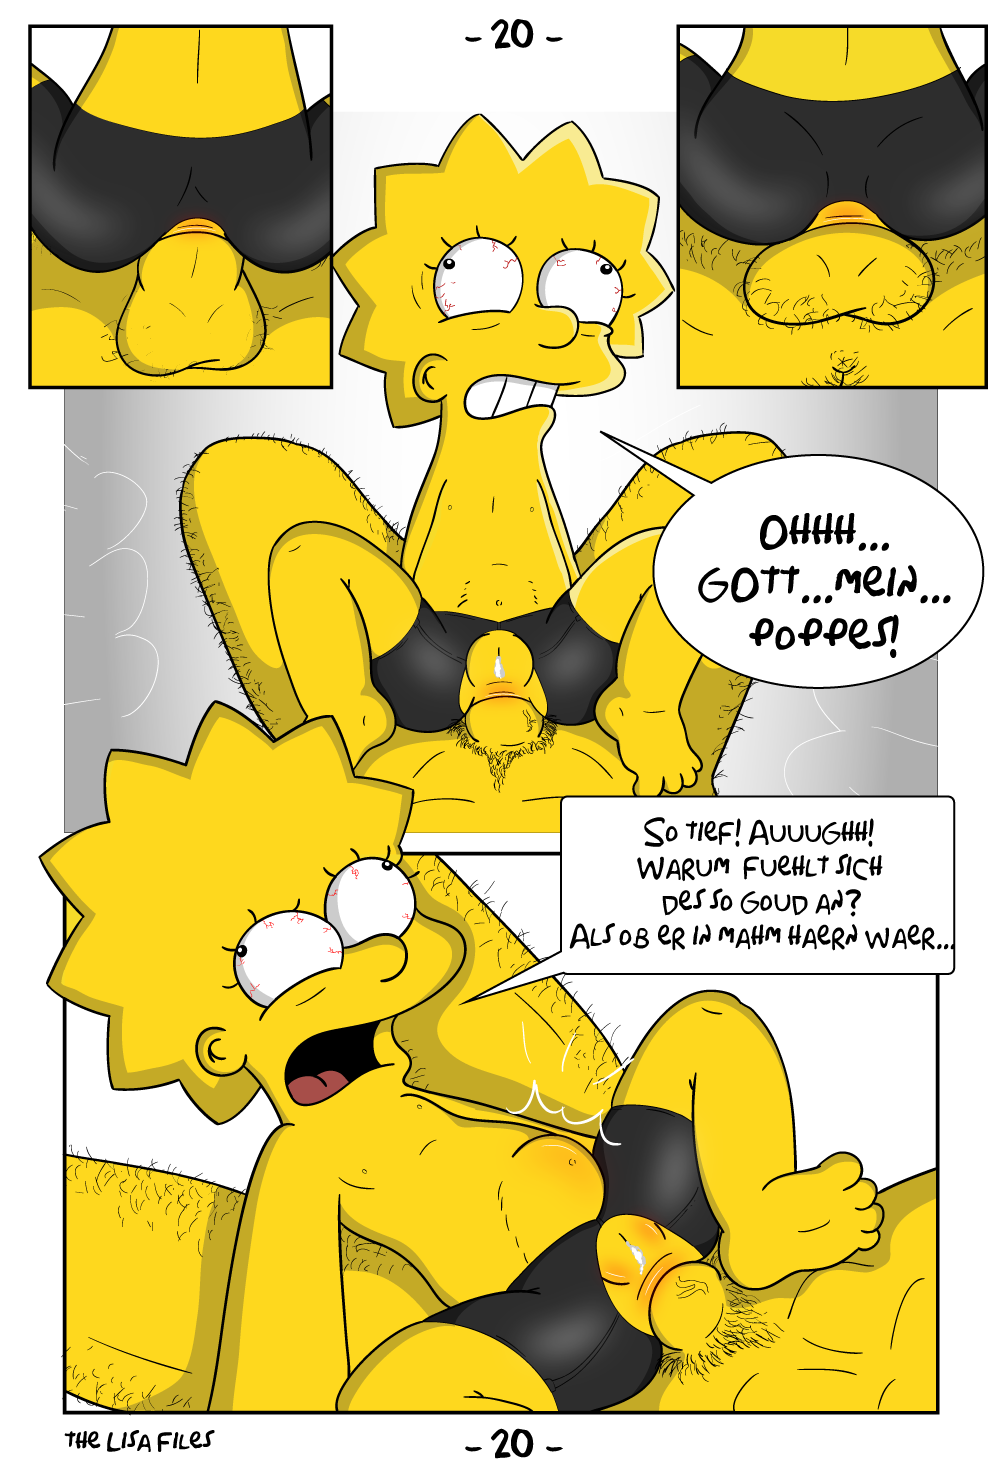 Porn Comics - L.I.S.A Files- Hessisch – Simpsons porn comics 8 muses